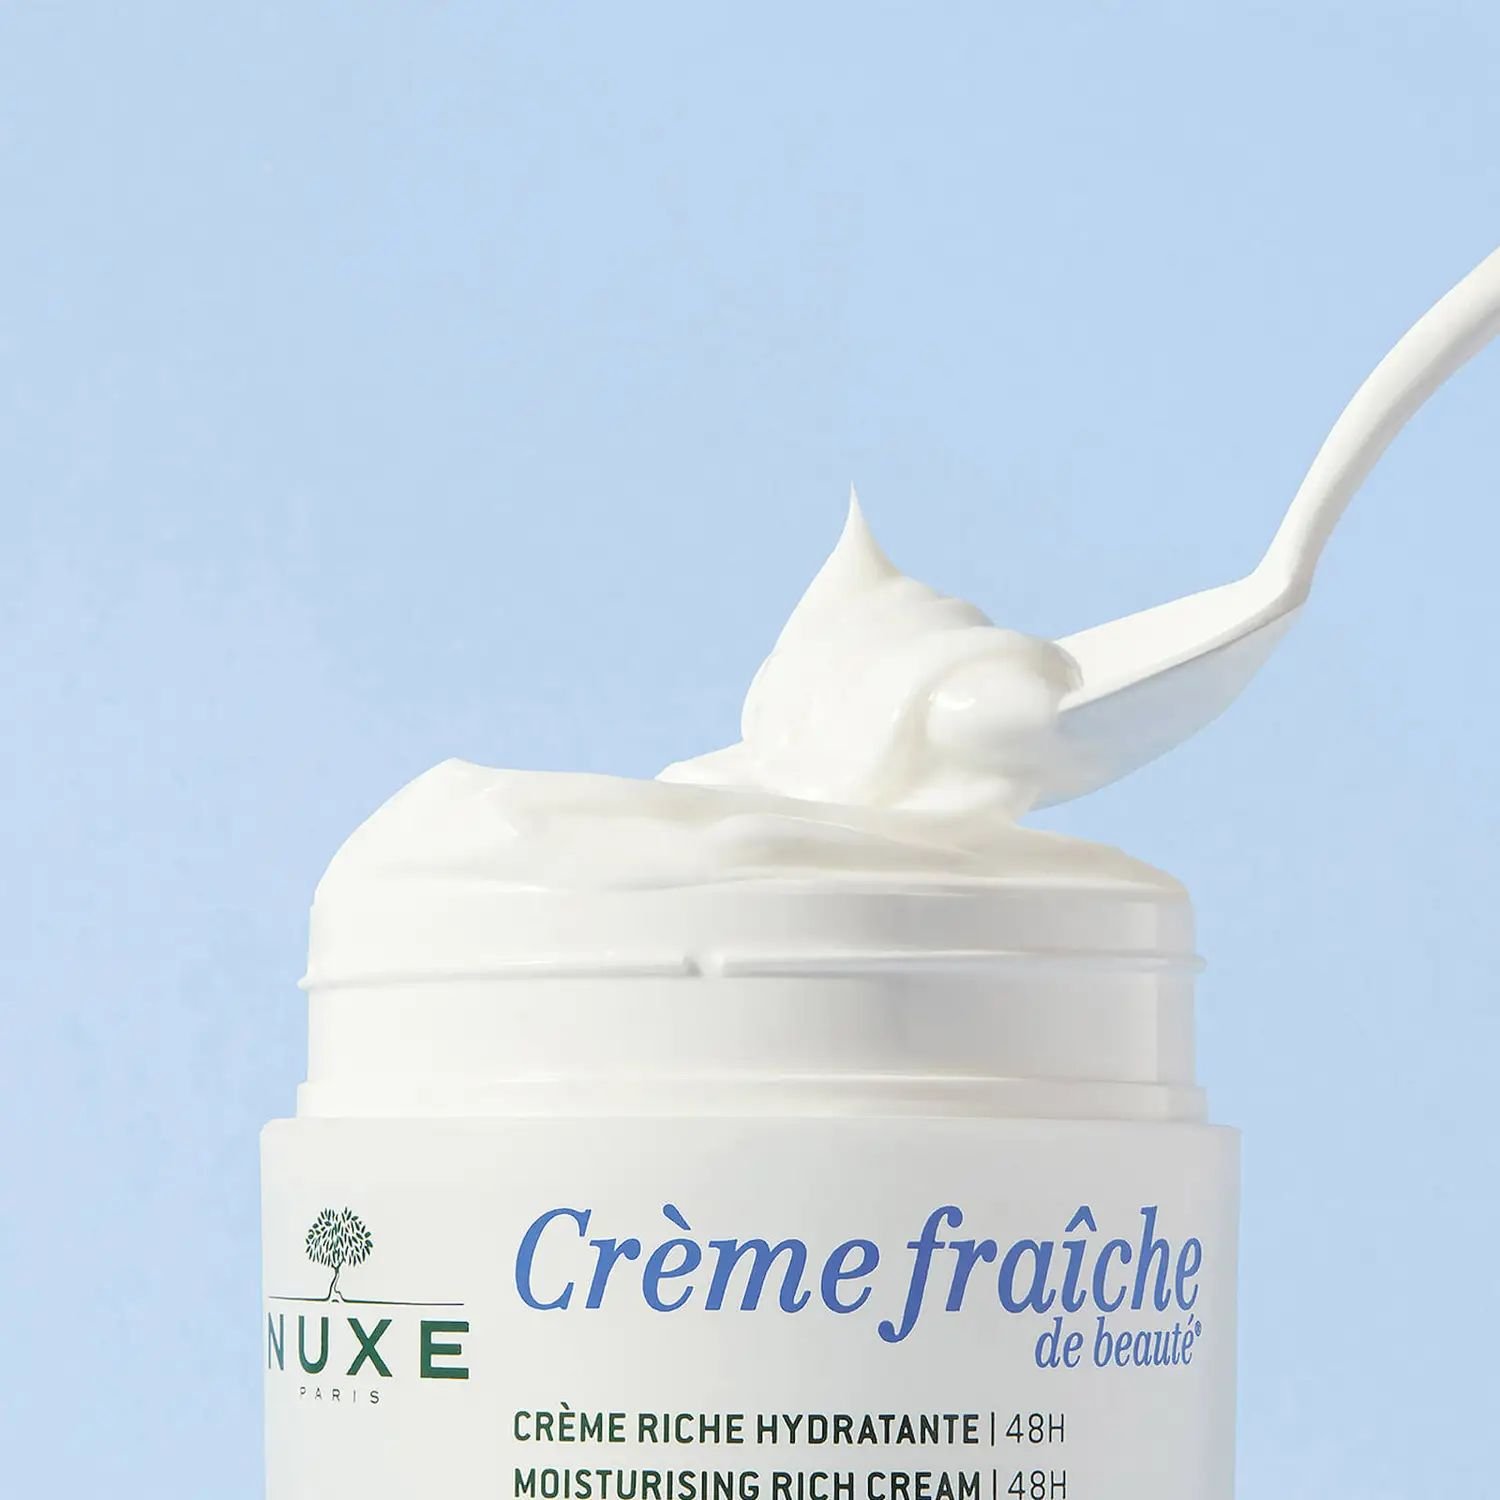 Увлажняющий крем-фреш для лица Nuxe Creme fraiche de beaute 48 часов, для сухой кожи, 50 мл - фото 4